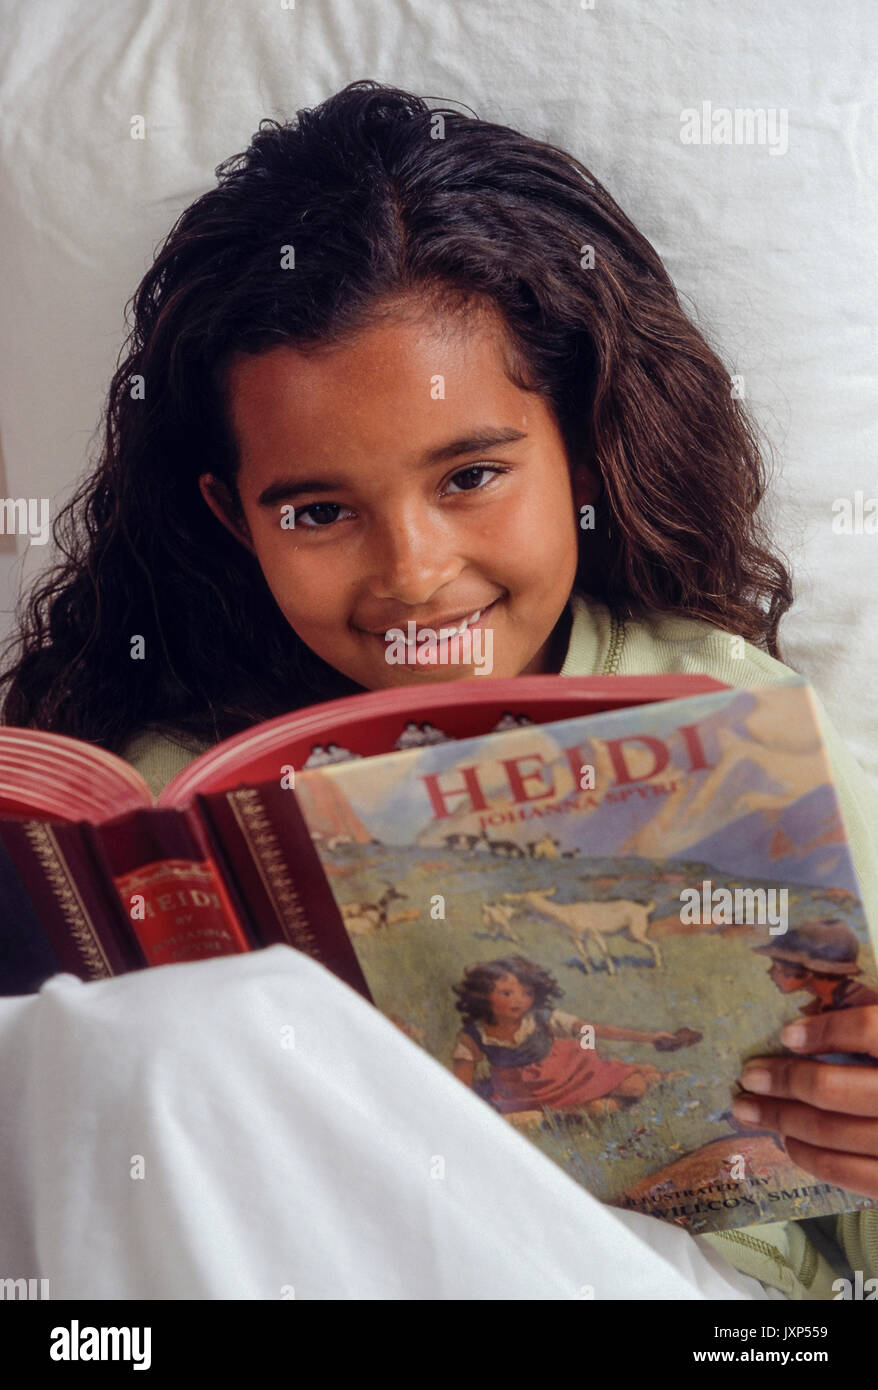 Bambina 7-9 anni con sincera espressione leggendo i classici storybook "Heidi" nel letto cerca aprire un accogliente sorriso. African American/Caucasian Foto Stock